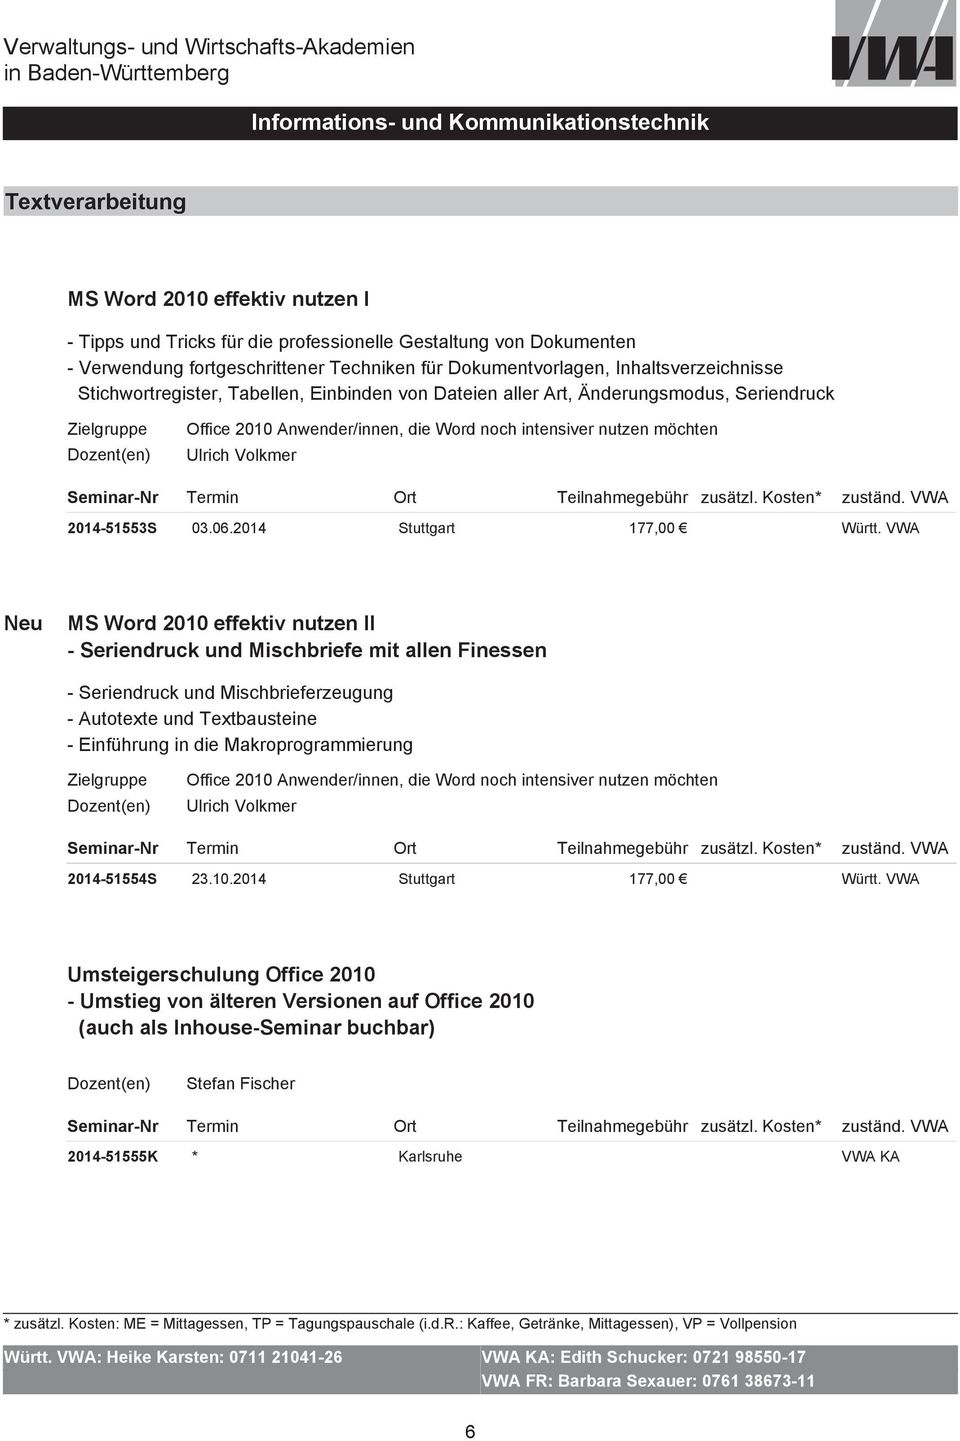 2014 Stuttgart Neu MS Word 2010 effektiv nutzen II - Seriendruck und Mischbriefe mit allen Finessen - Seriendruck und Mischbrieferzeugung - Autotexte und Textbausteine - Einführung in die